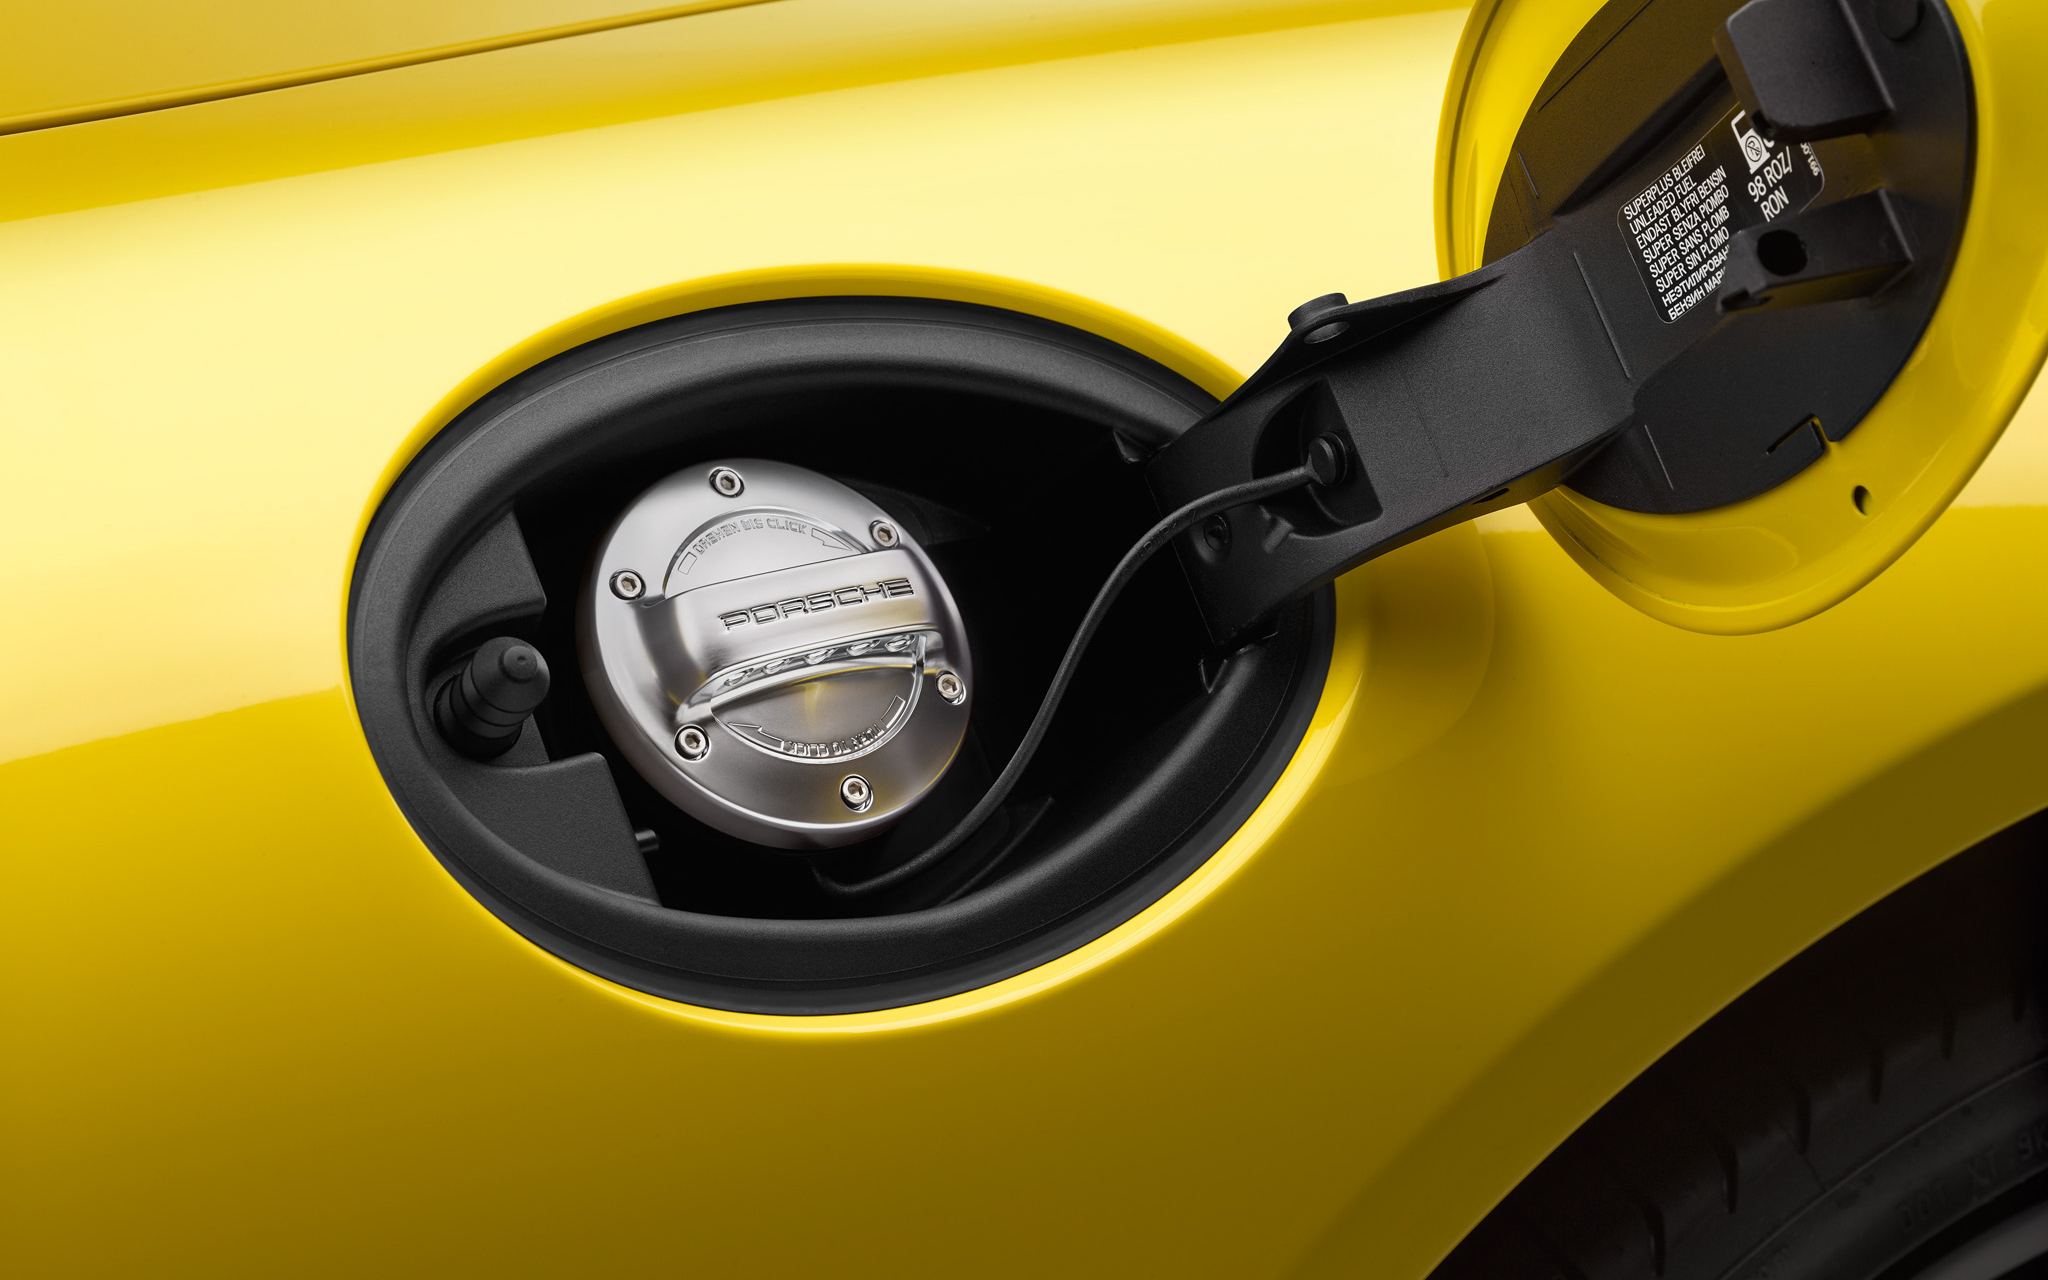 Metallhülse Überlauf Tankbalg Porsche 911 OEM Qualität gelb verzinkt 9012015930 